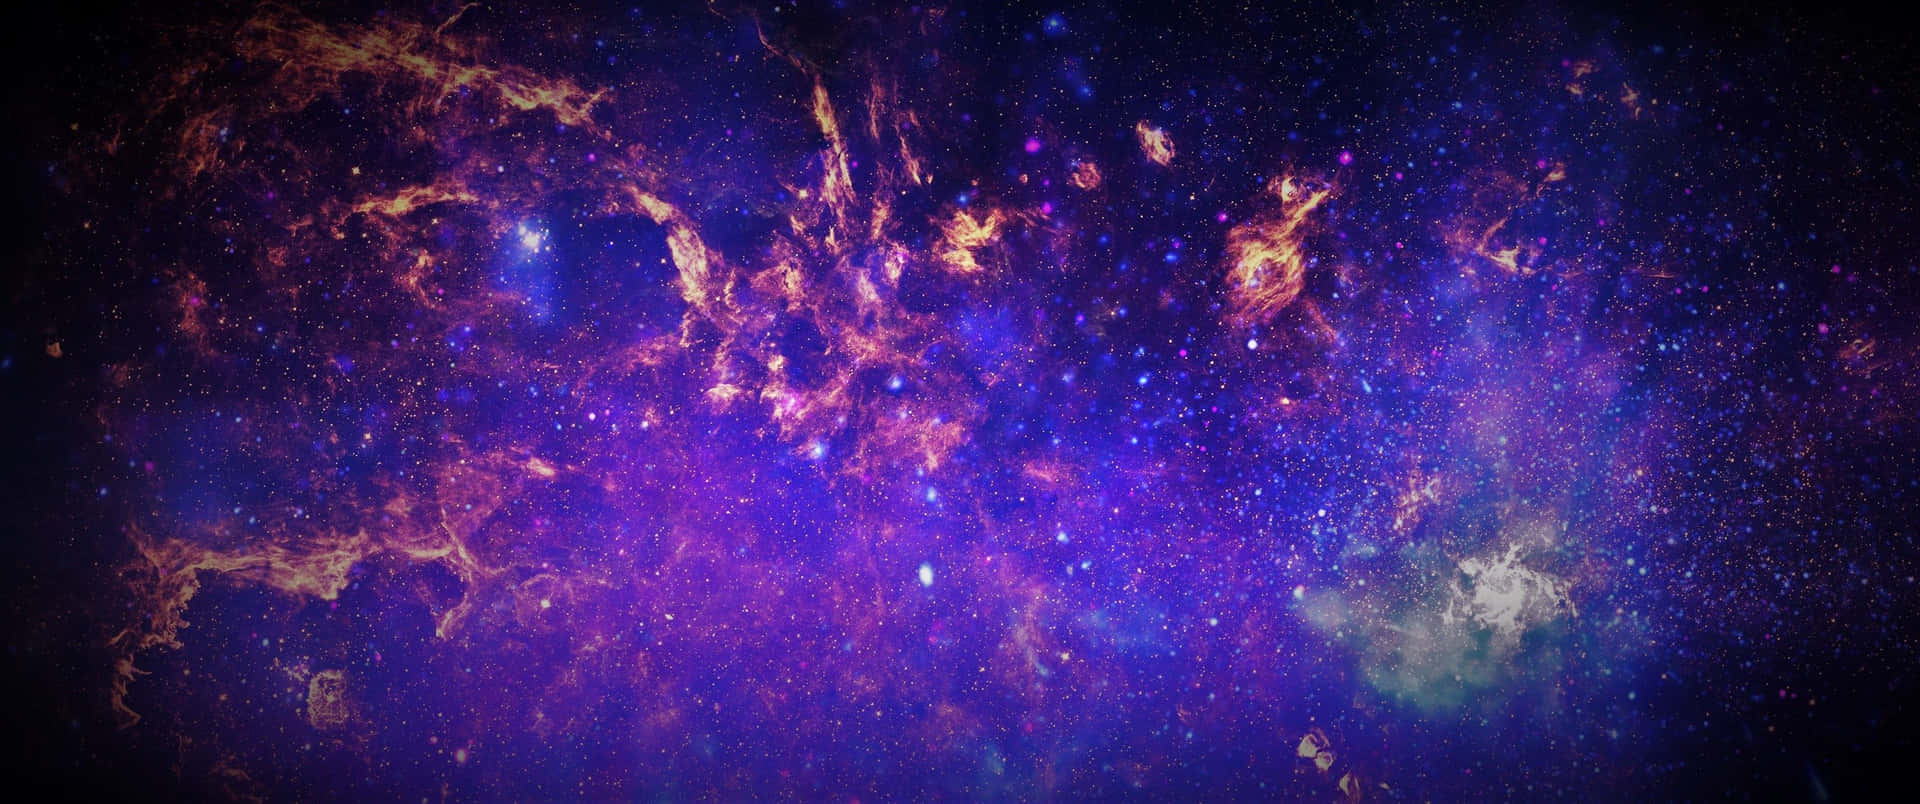 Eineweite Ausdehnung Der Milchstraße Mit Zahlreichen Sternen Und Nebeln Wallpaper